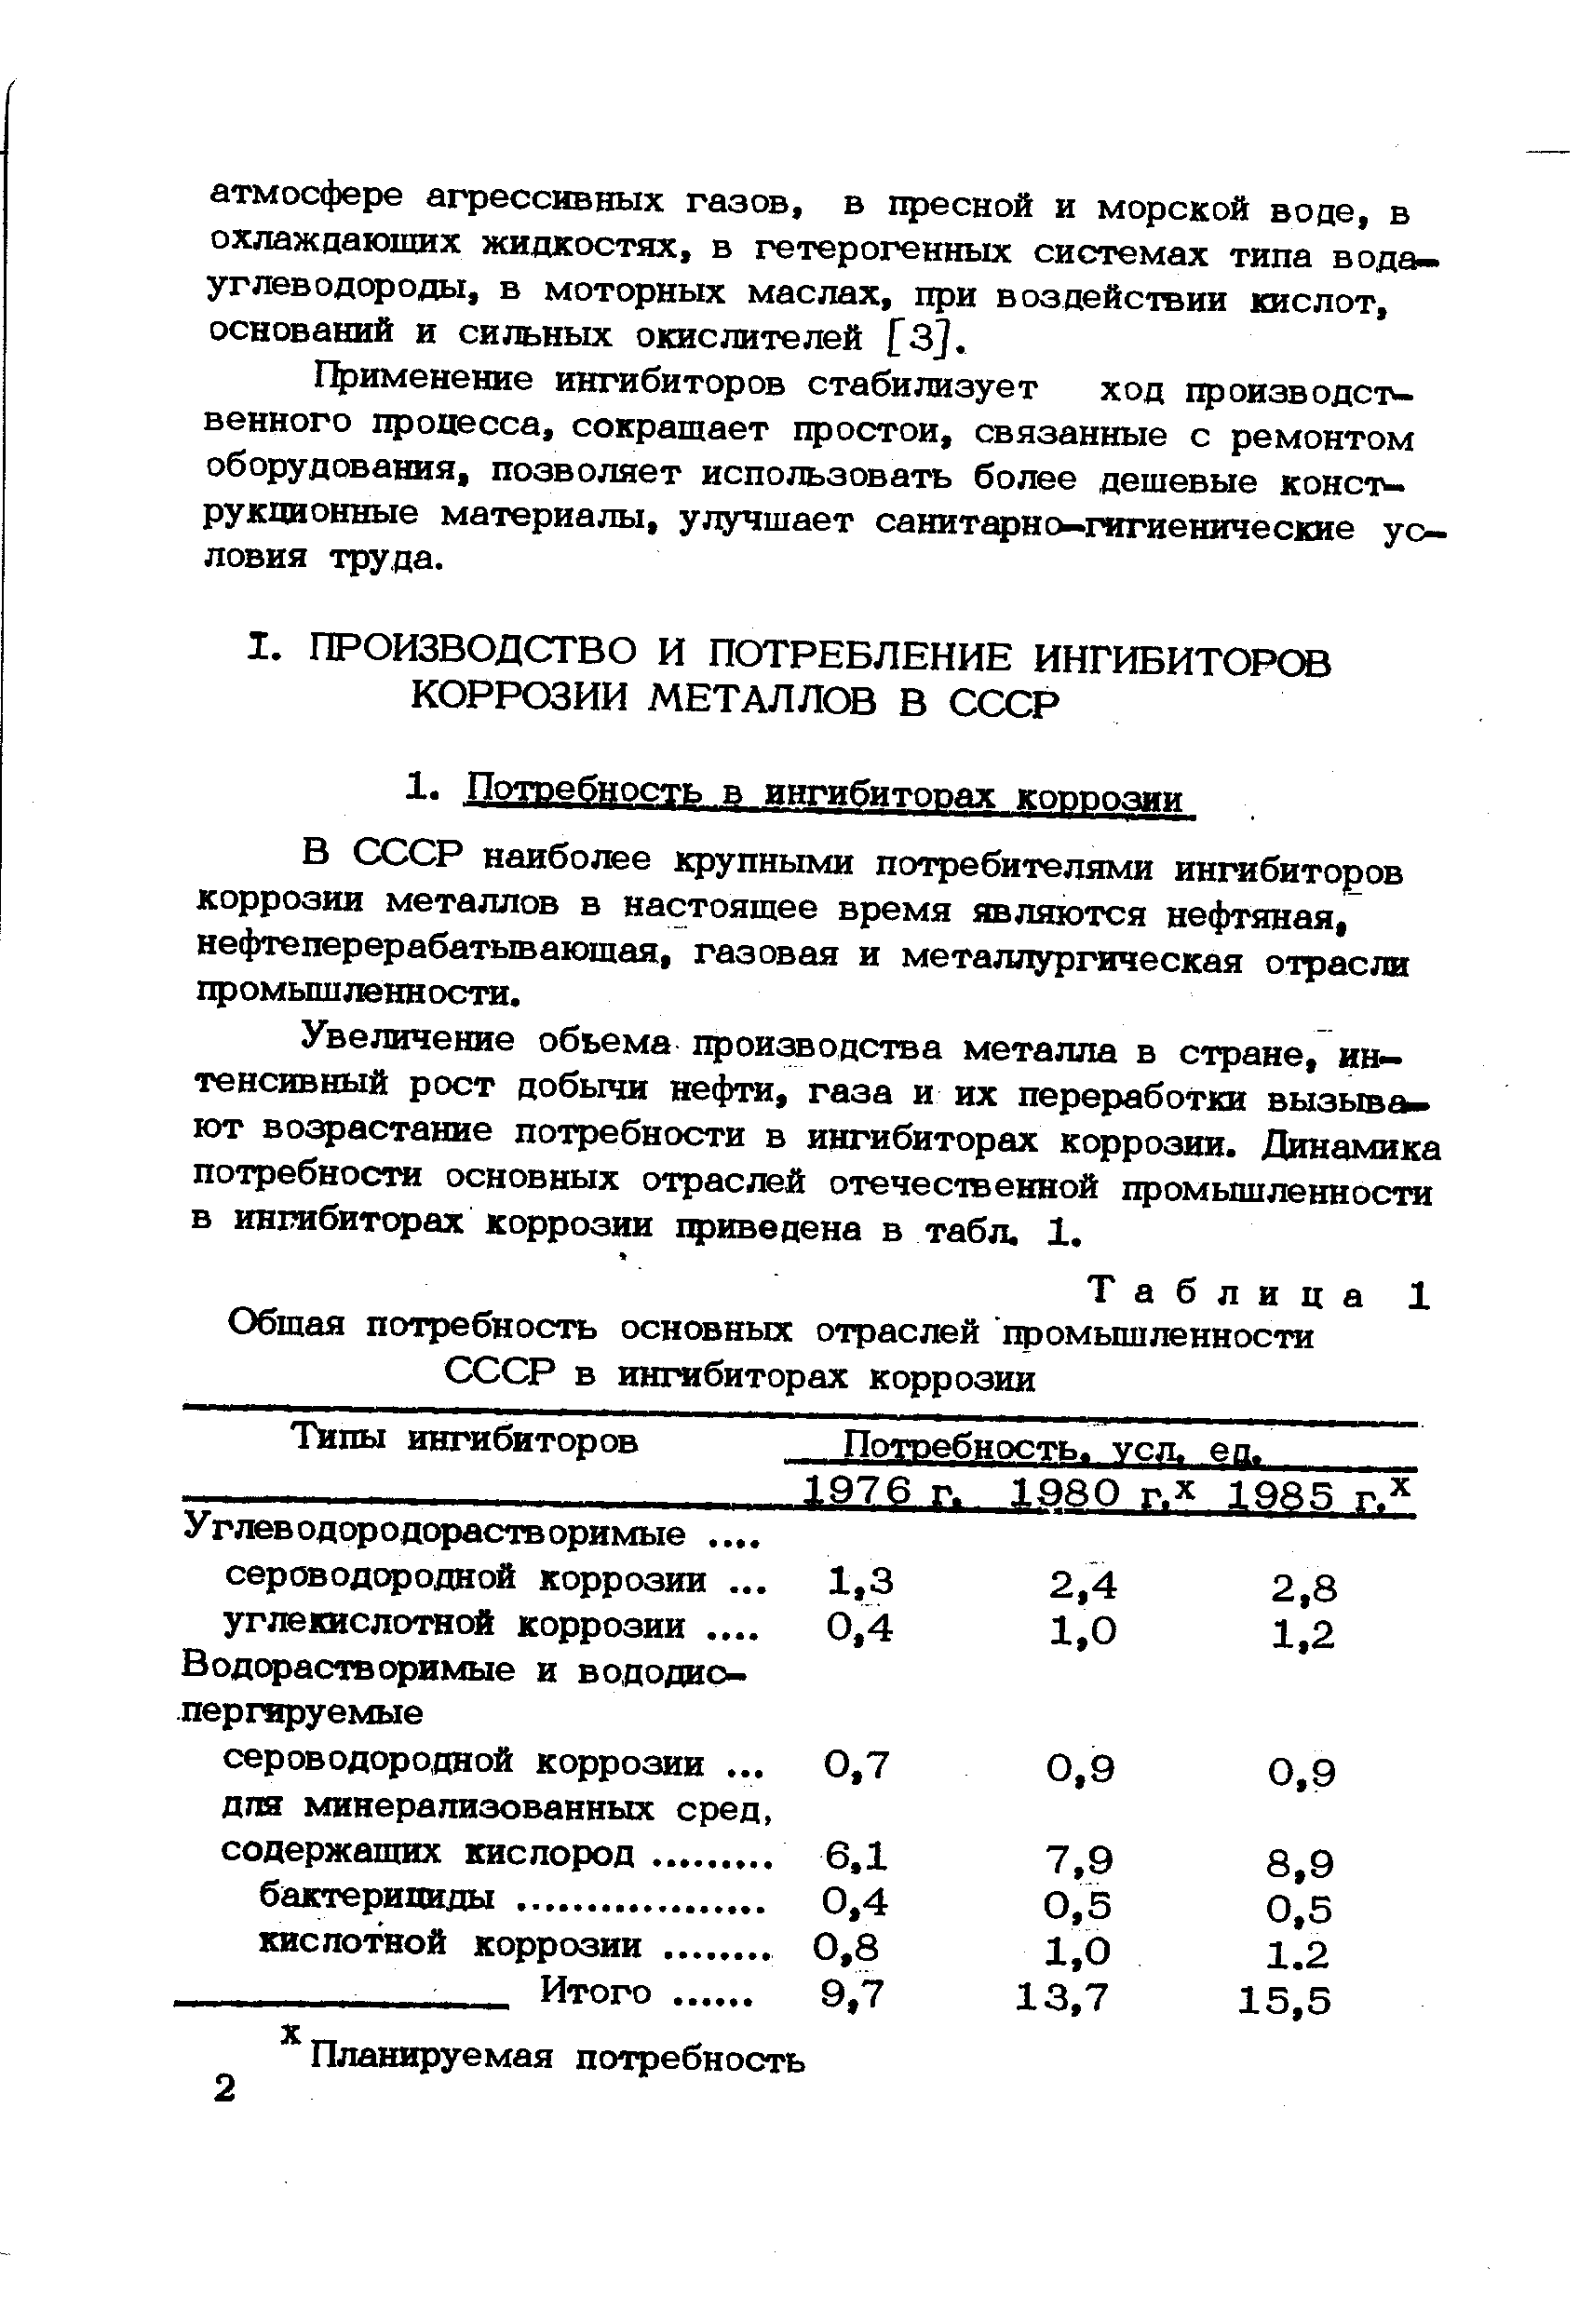 Таблица 1 Общая потребность основных отраслей промьш1ленности СССР в ингибиторах коррозии
